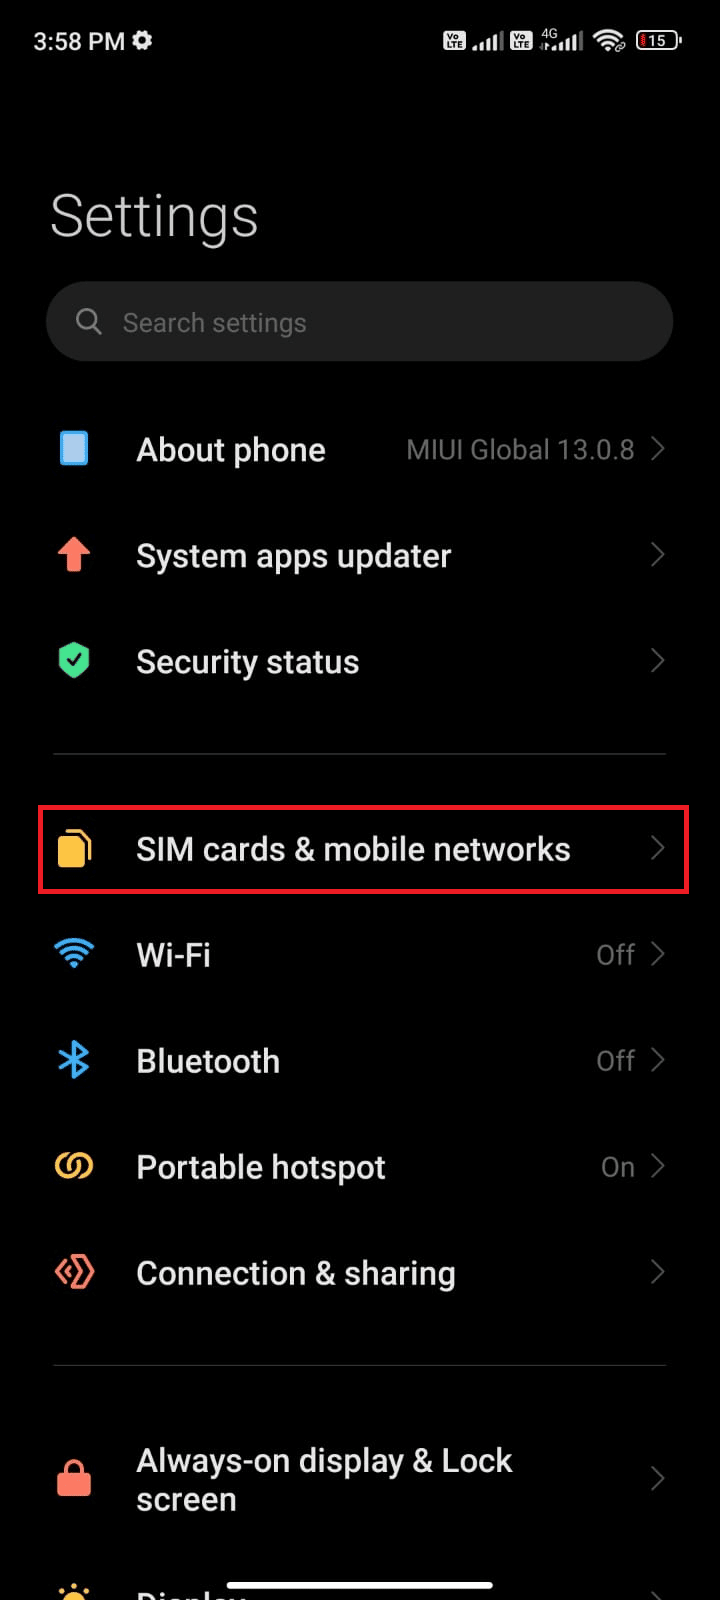 коснитесь опции «Мобильные сети SIM-карты»